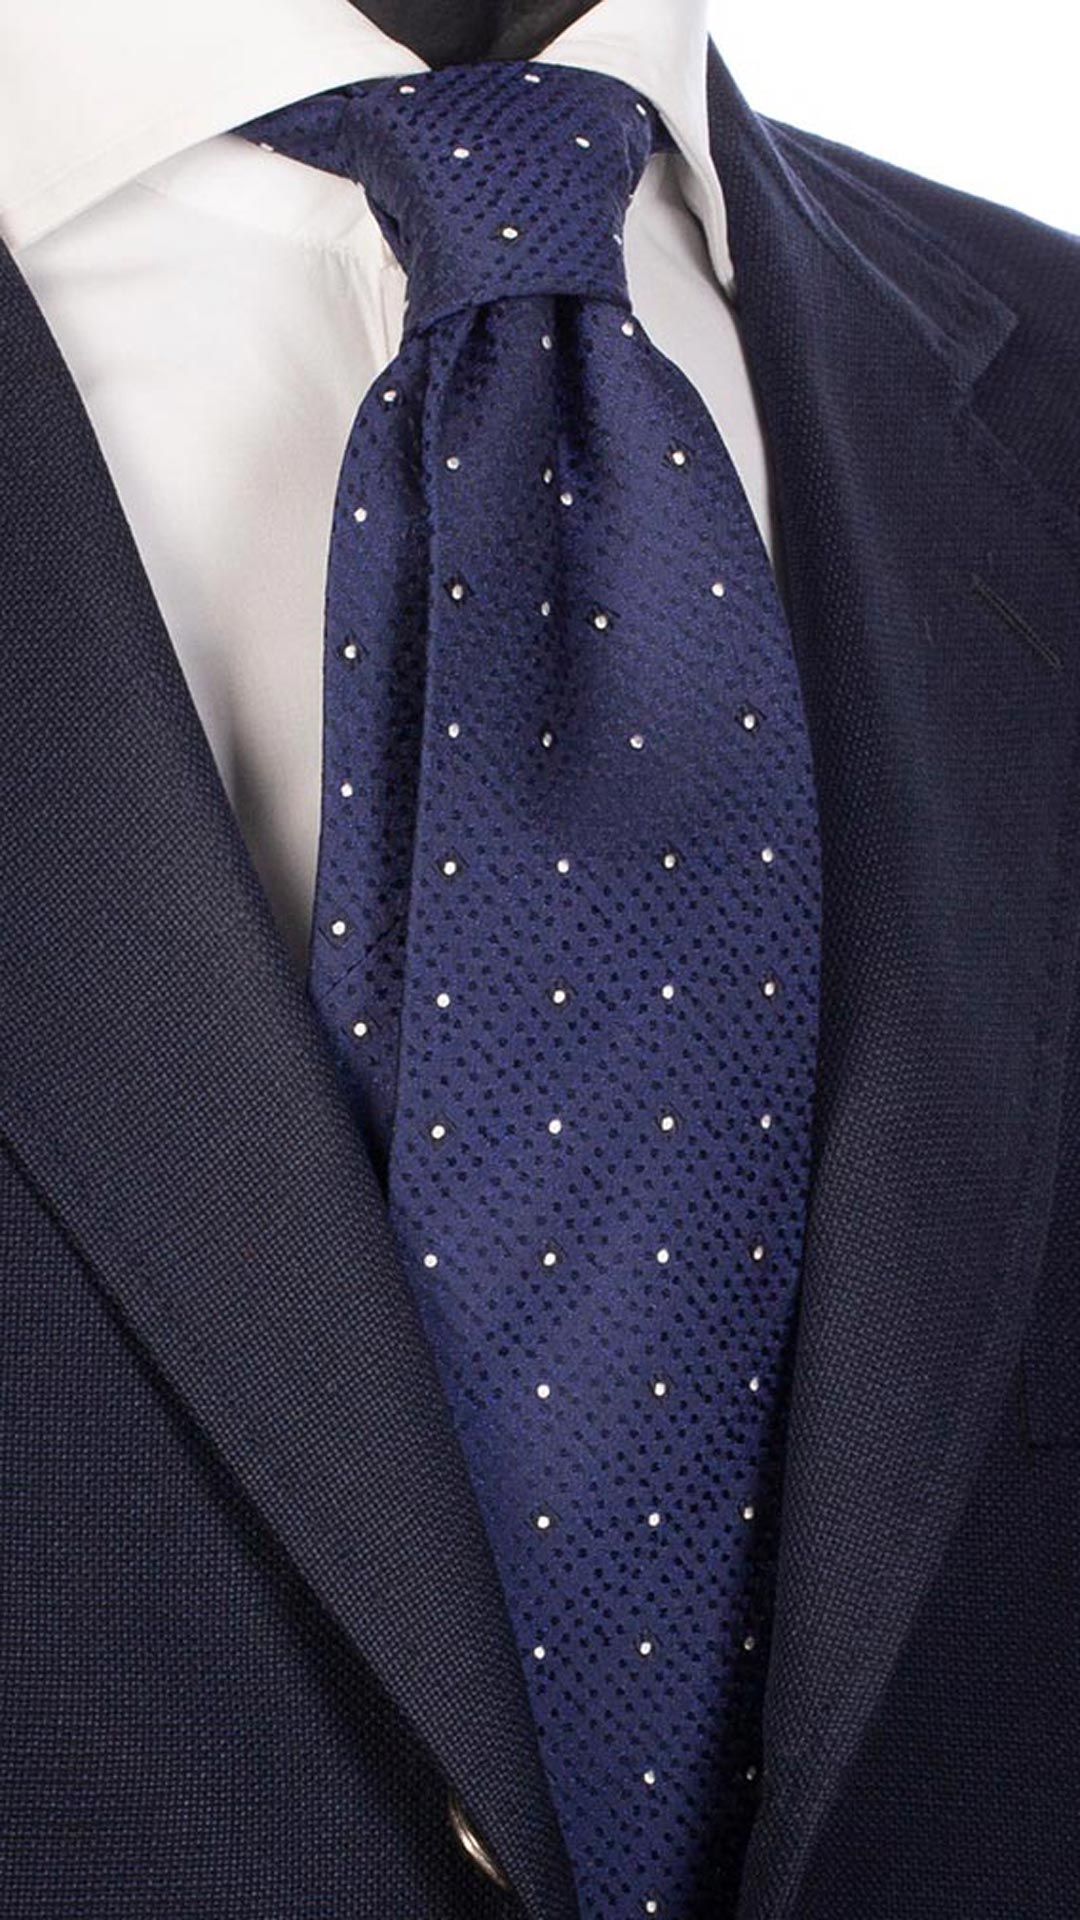 Cravatta da Cerimonia di Seta Bluette Fantasia Blu Bianca Cangiante CY2541 Made in Italy Graffeo Cravatte